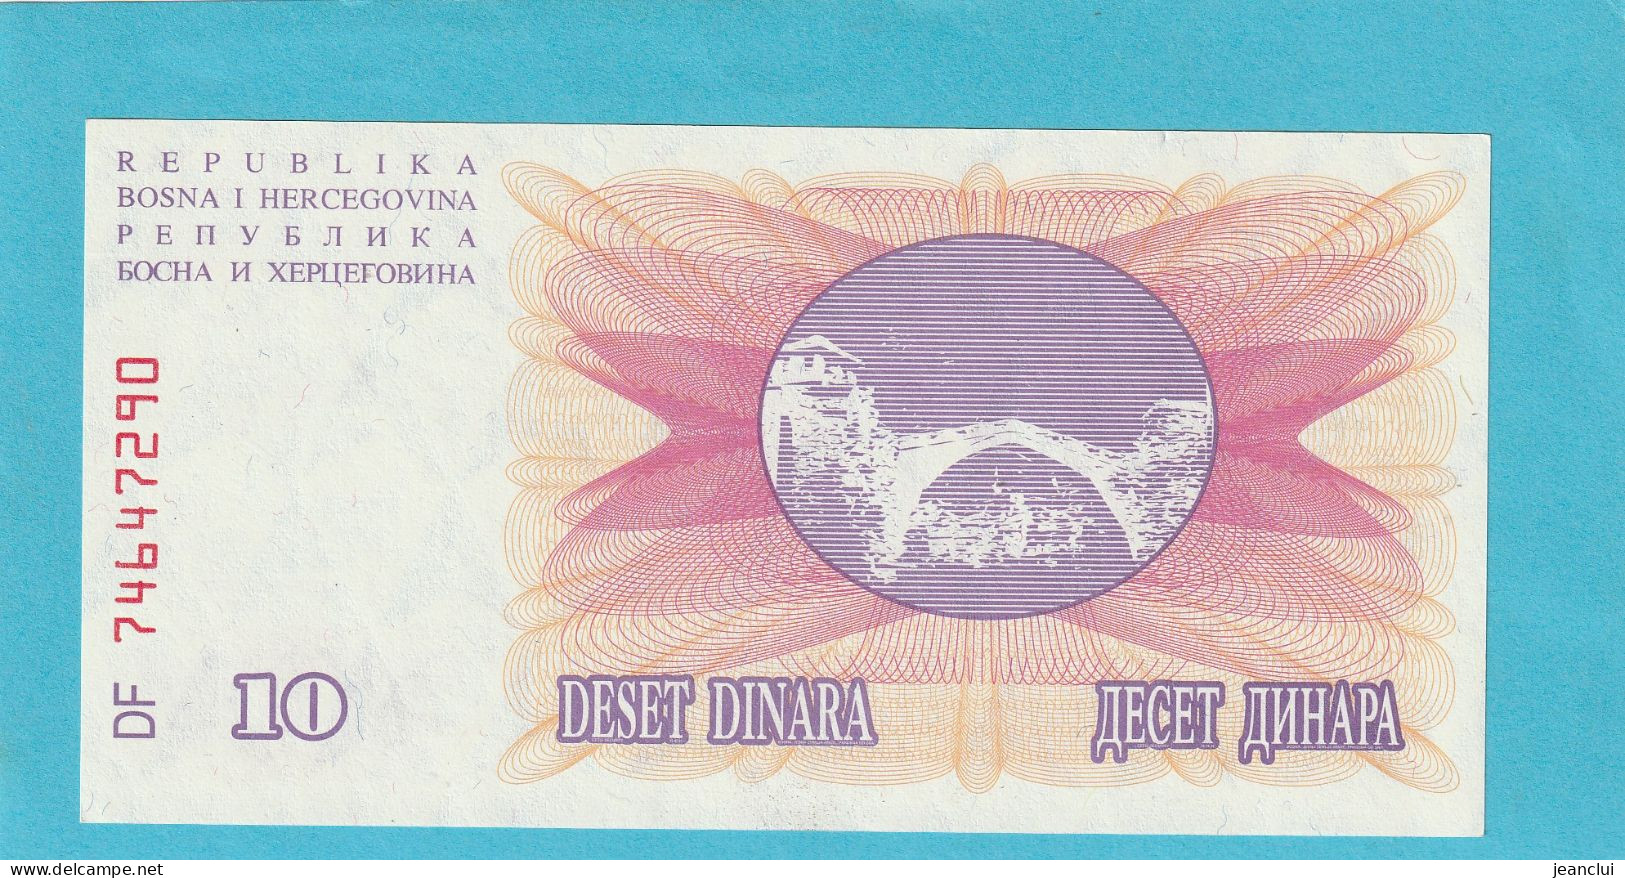 NARODNA BANKA BOSNE I HERCEGOVINE  .  10 DINARA  . 1-7-1992  .  N°  746 472 90  .  2 SCANNES  .  BILLET EN TRES BEL ETAT - Bosnia Erzegovina